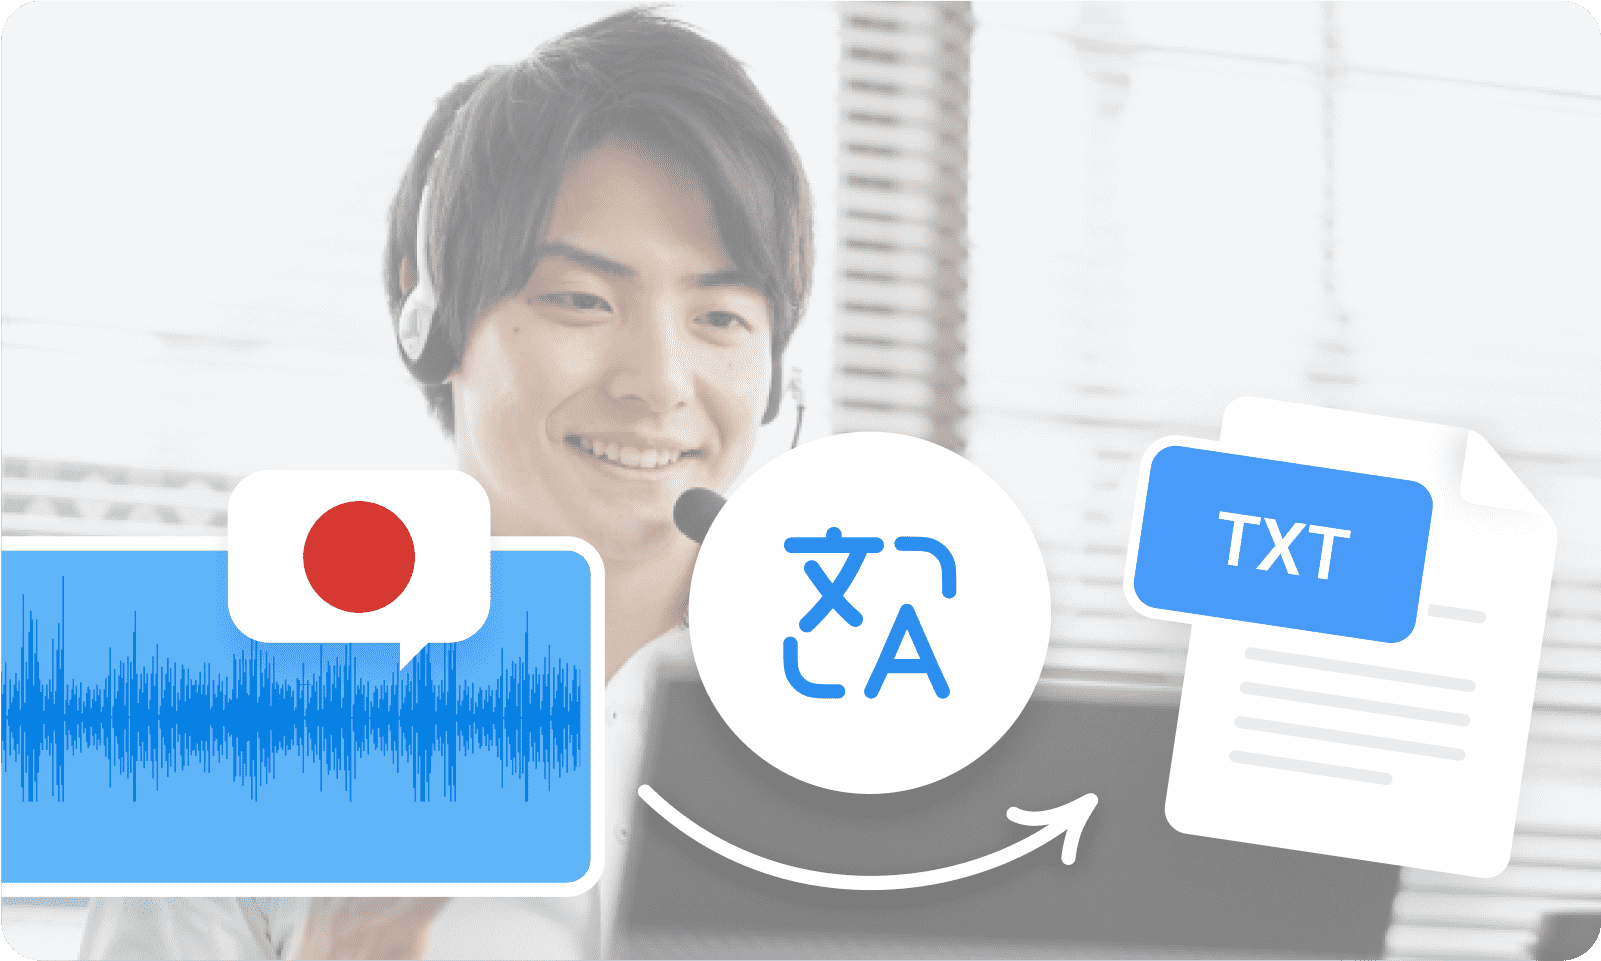 Transcrever Japonês audio para texto